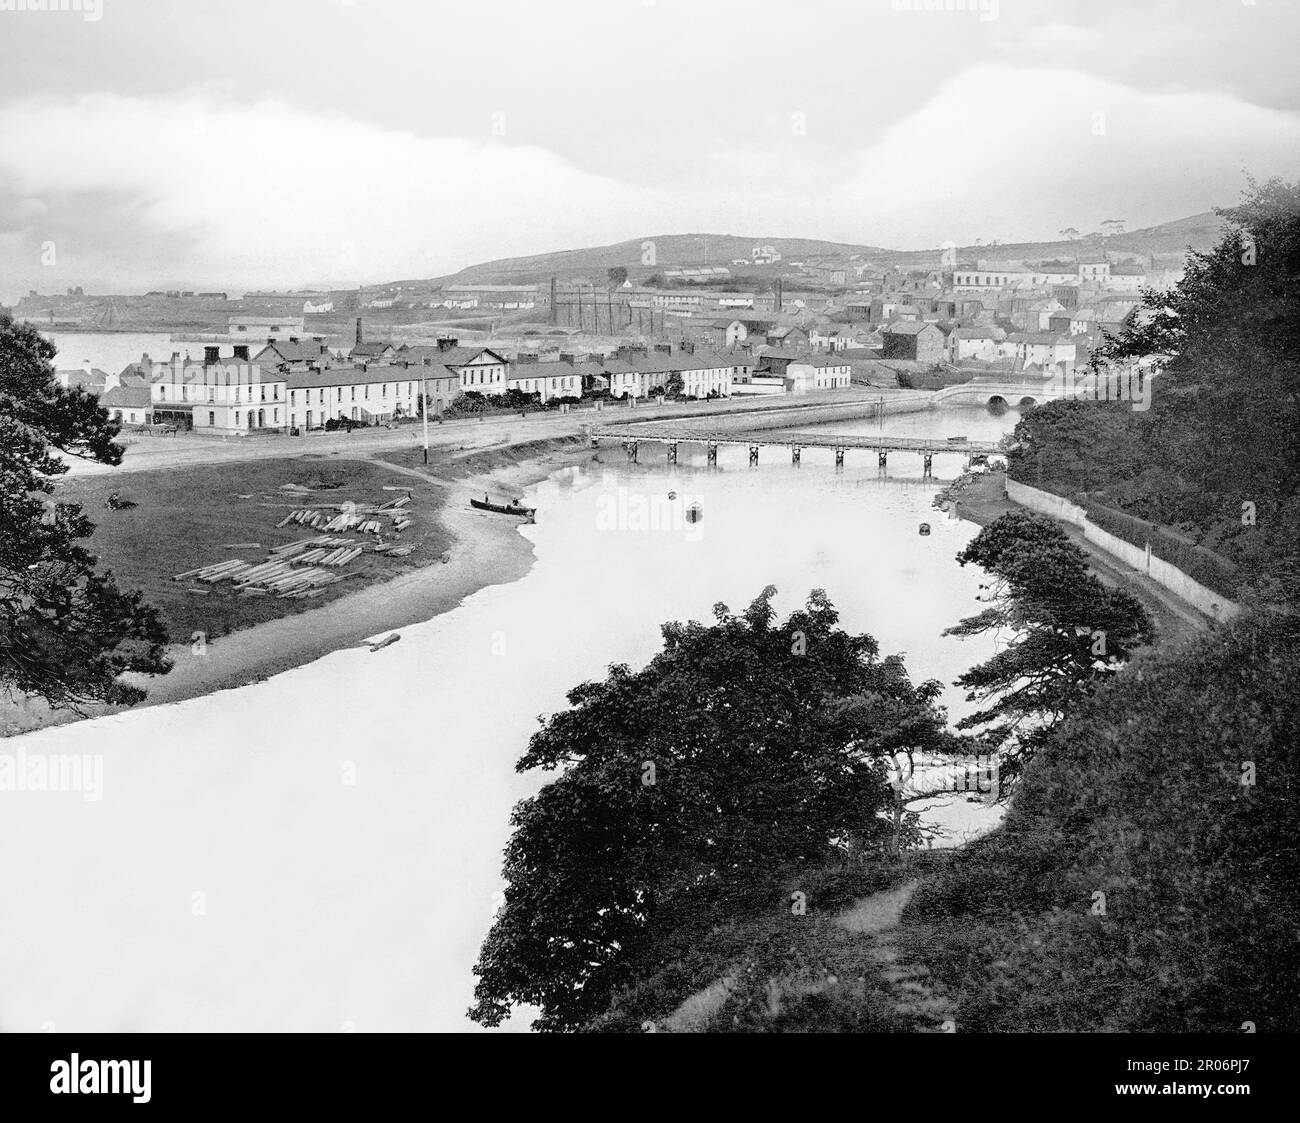 Una vista di fine 19th ° secolo di Wicklow, la città della contea di Wicklow in Irlanda. Porto commerciale per le importazioni di legname e tessuti, il porto si trova sul fiume Varry che scorre attraverso la città. Foto Stock